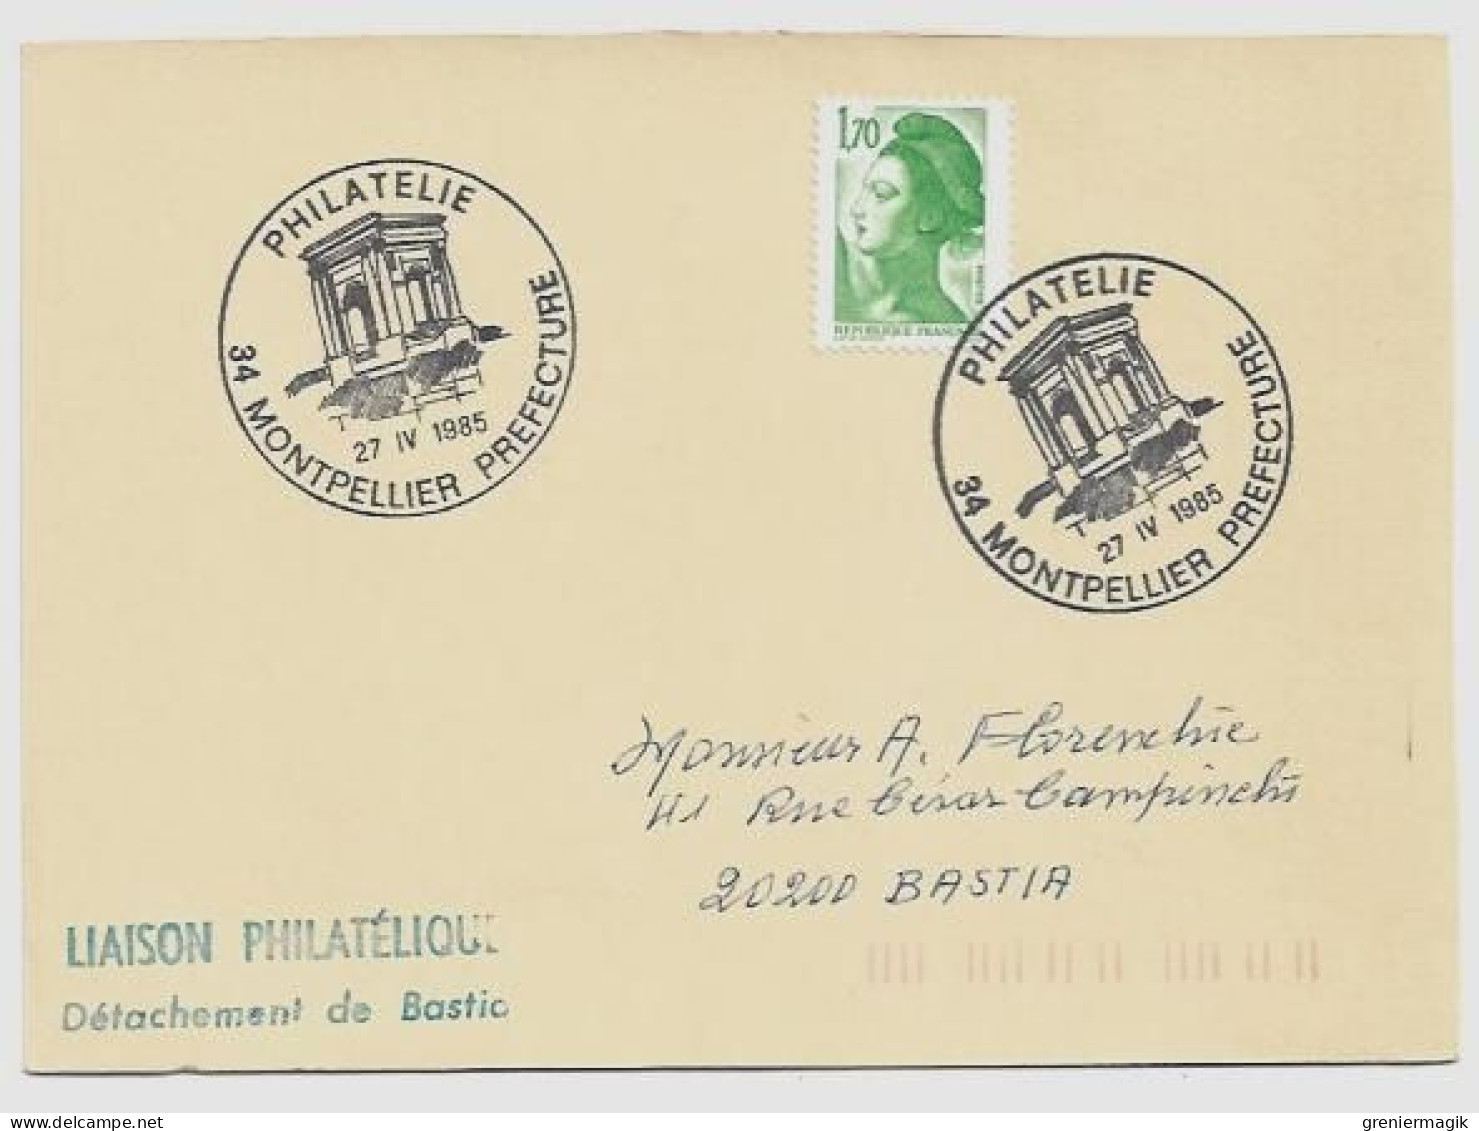 N°2318 Cachet Philatélie Montpellier Préfecture 27 IV 1985 - Liaison Philatélique Bastia - Liberté Gandon 1,70 Vert - Temporary Postmarks